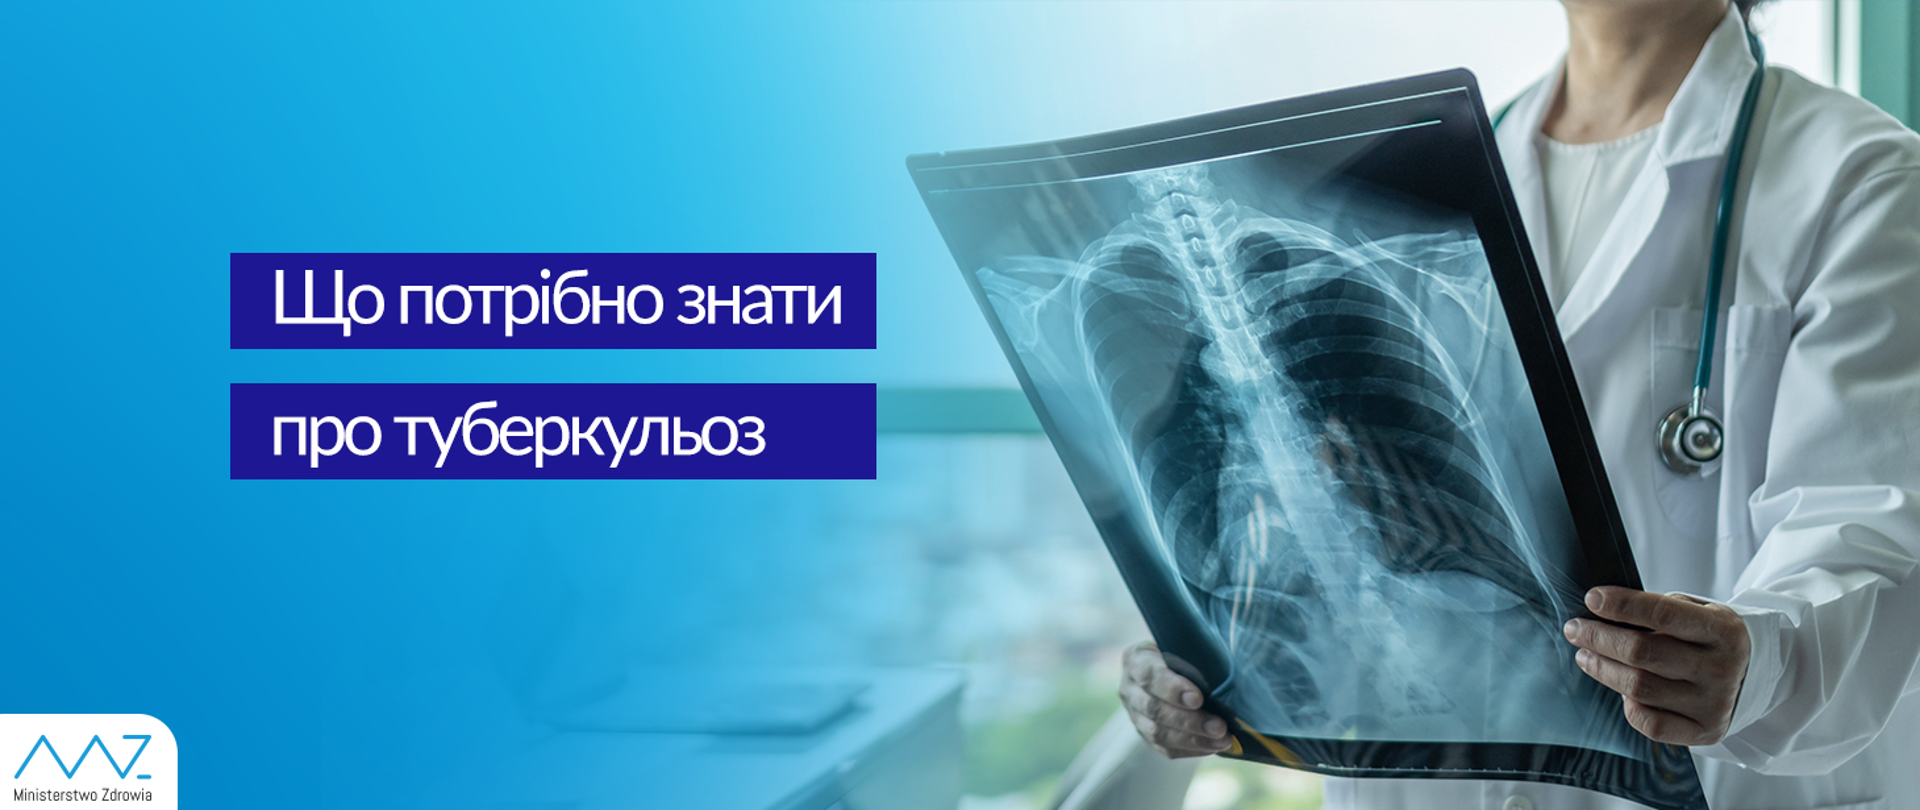 Що потрібно знати про туберкульоз - Ministerstwo Zdrowia - Portal Gov.pl